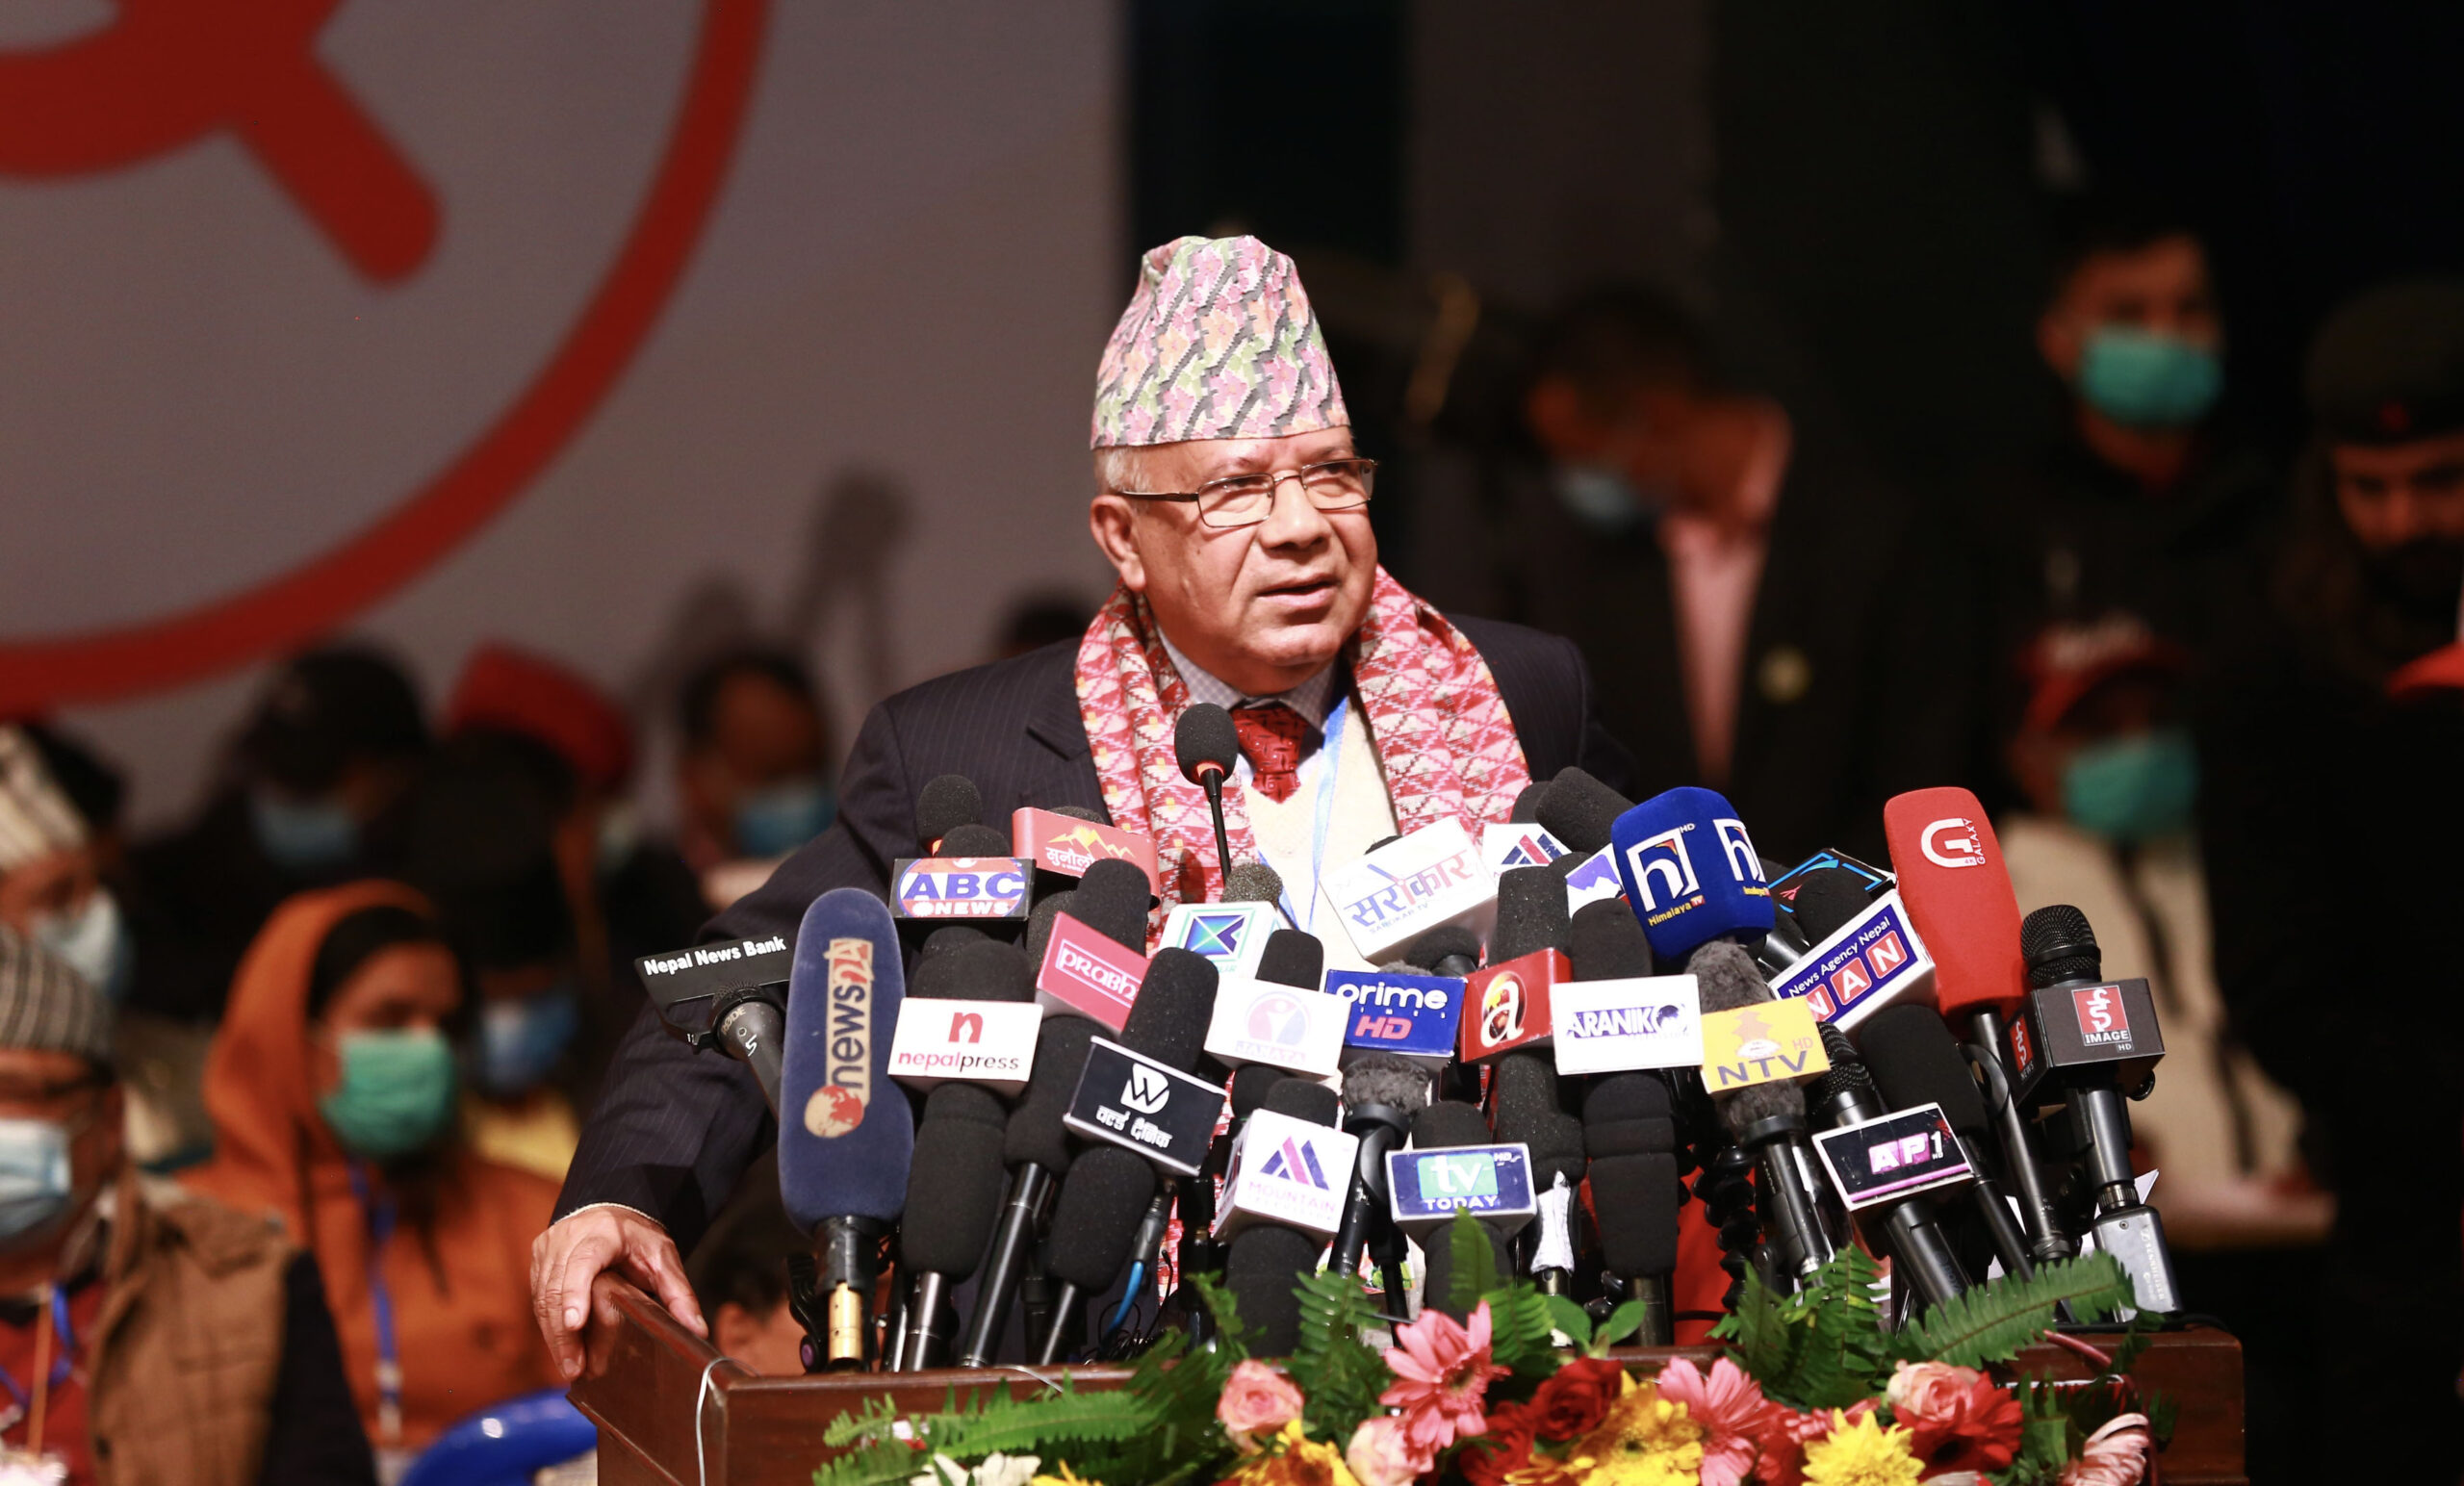 कुनै व्यक्ति तथा वंशको दासत्व स्वीकार्य छैन : अध्यक्ष नेपाल